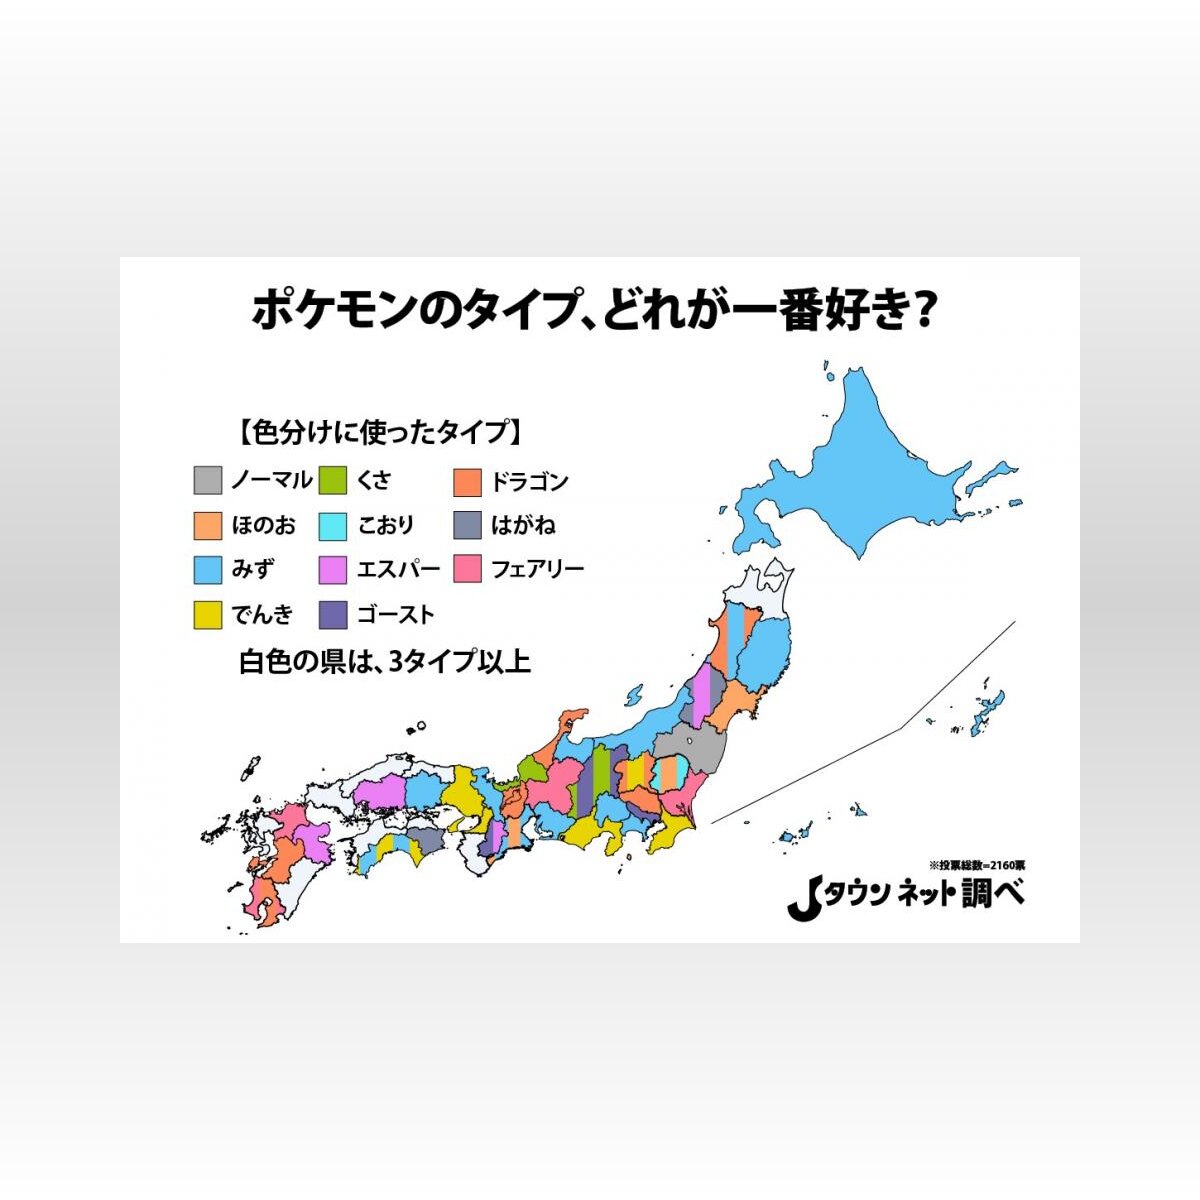 あなたの地元は何タイプ 47都道府県別 好きなポケモンのタイプ Mapがこちら 21年1月2日 Biglobeニュース